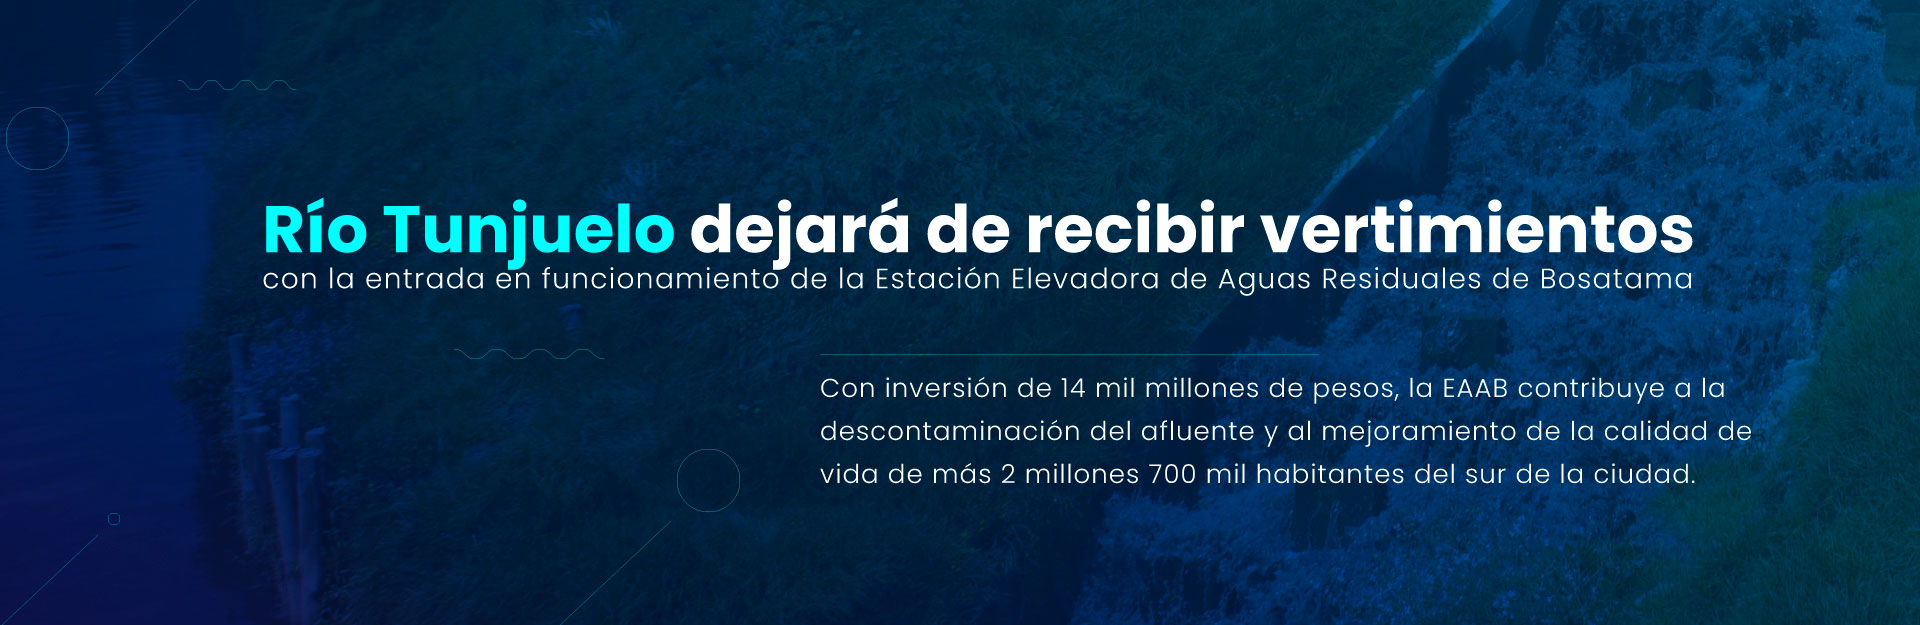 Río Tunjuelo dejará de recibir vertimientos con la entrada en funcionamiento de la Estación Elevadora de Aguas Residuales de Bosatama